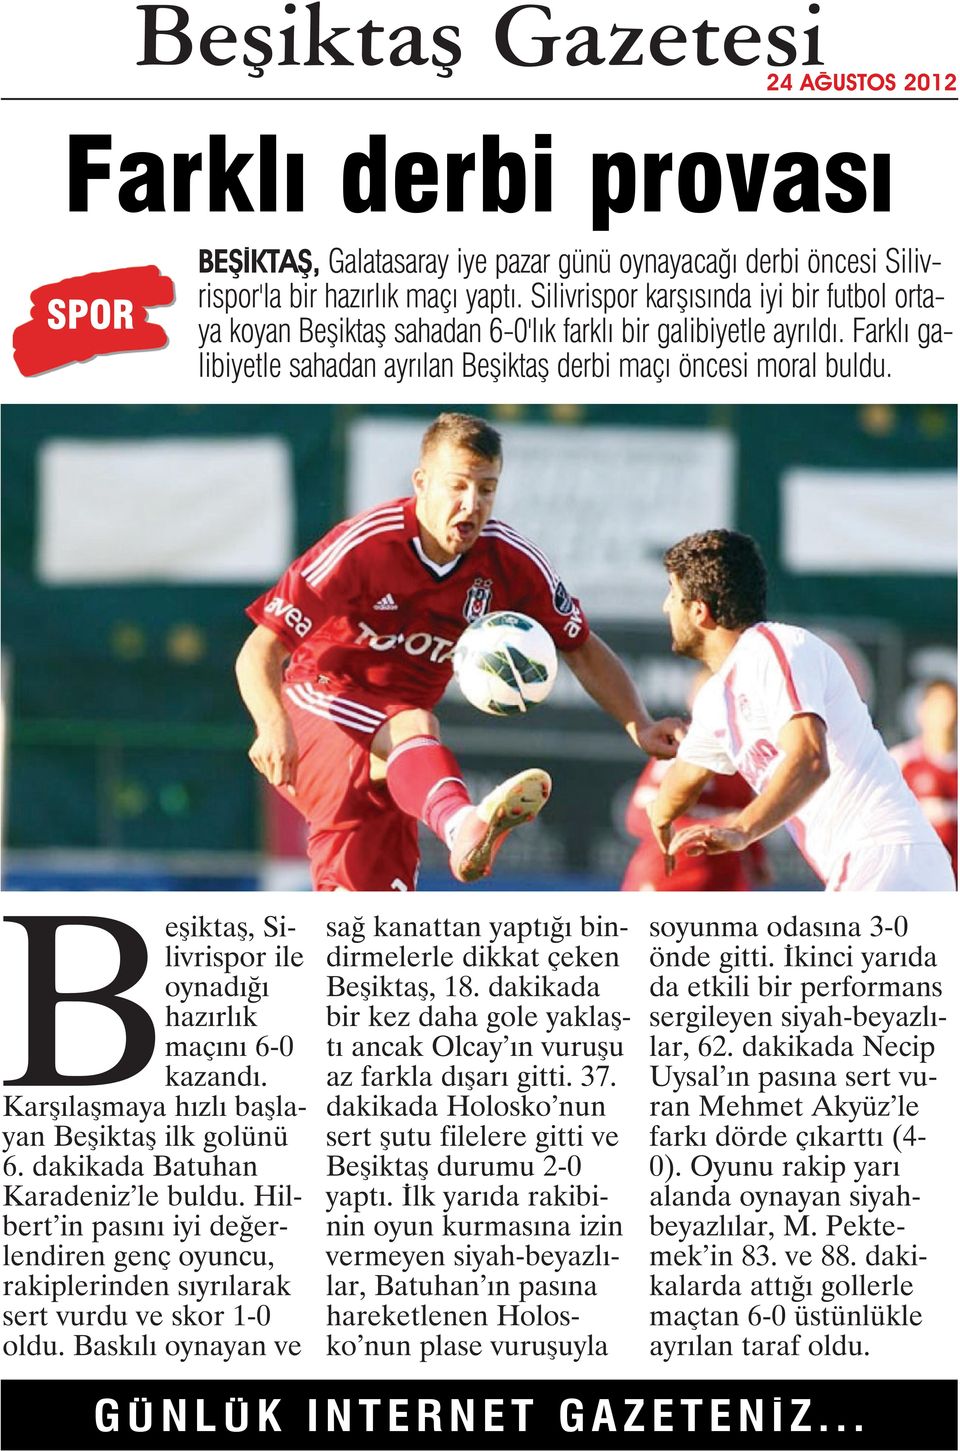 Beşiktaş, Silivrispor ile oynadığı hazırlık maçını 6-0 kazandı. Karşılaşmaya hızlı başlayan Beşiktaş ilk golünü 6. dakikada Batuhan Karadeniz le buldu.